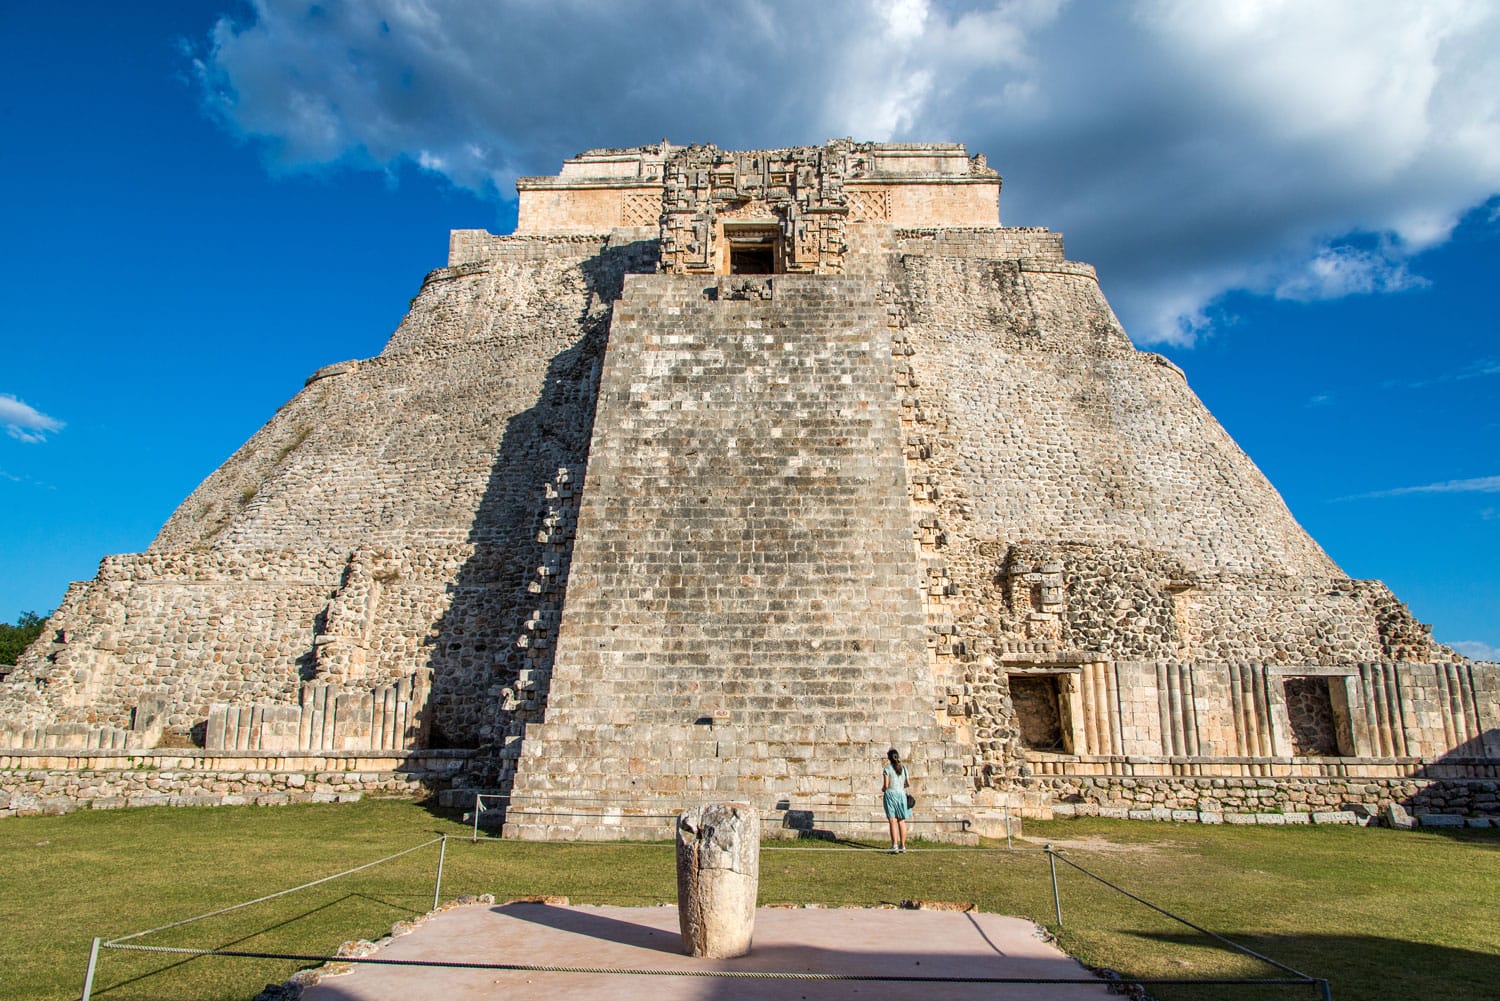 Uxmal pyramid, an ancient Mayan Ruin in Mexico